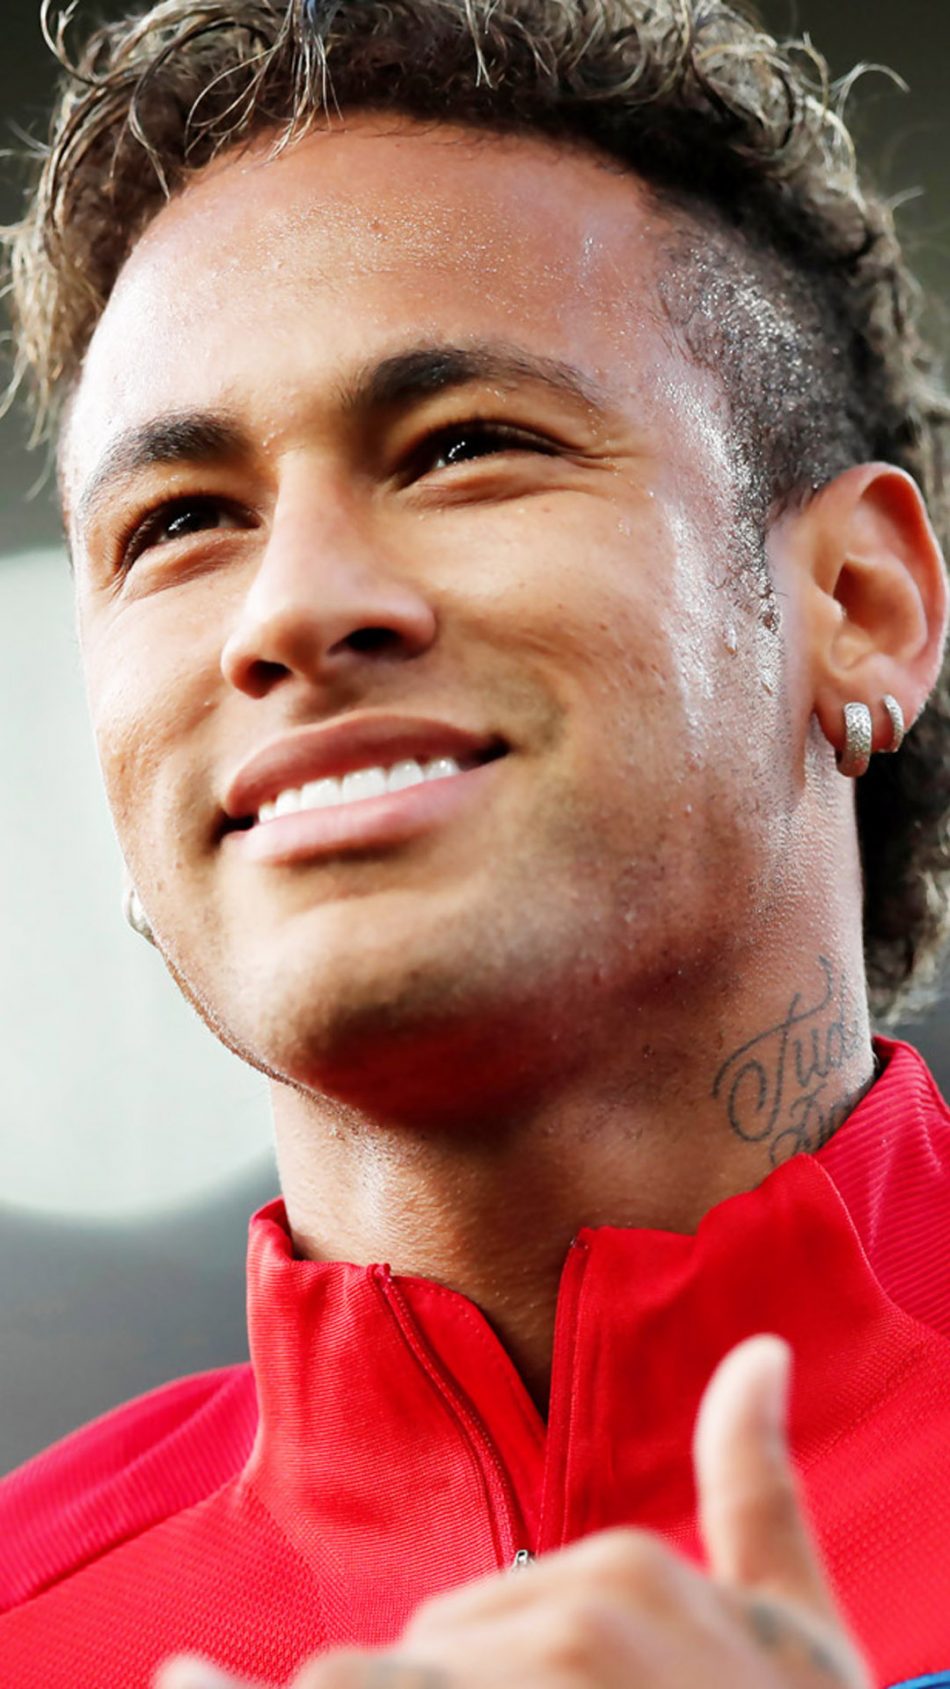 Cùng đón xem những khoảnh khắc ấn tượng của Neymar Jr trong năm 2018 trên hình ảnh đầy chất lượng và tươi sáng này!